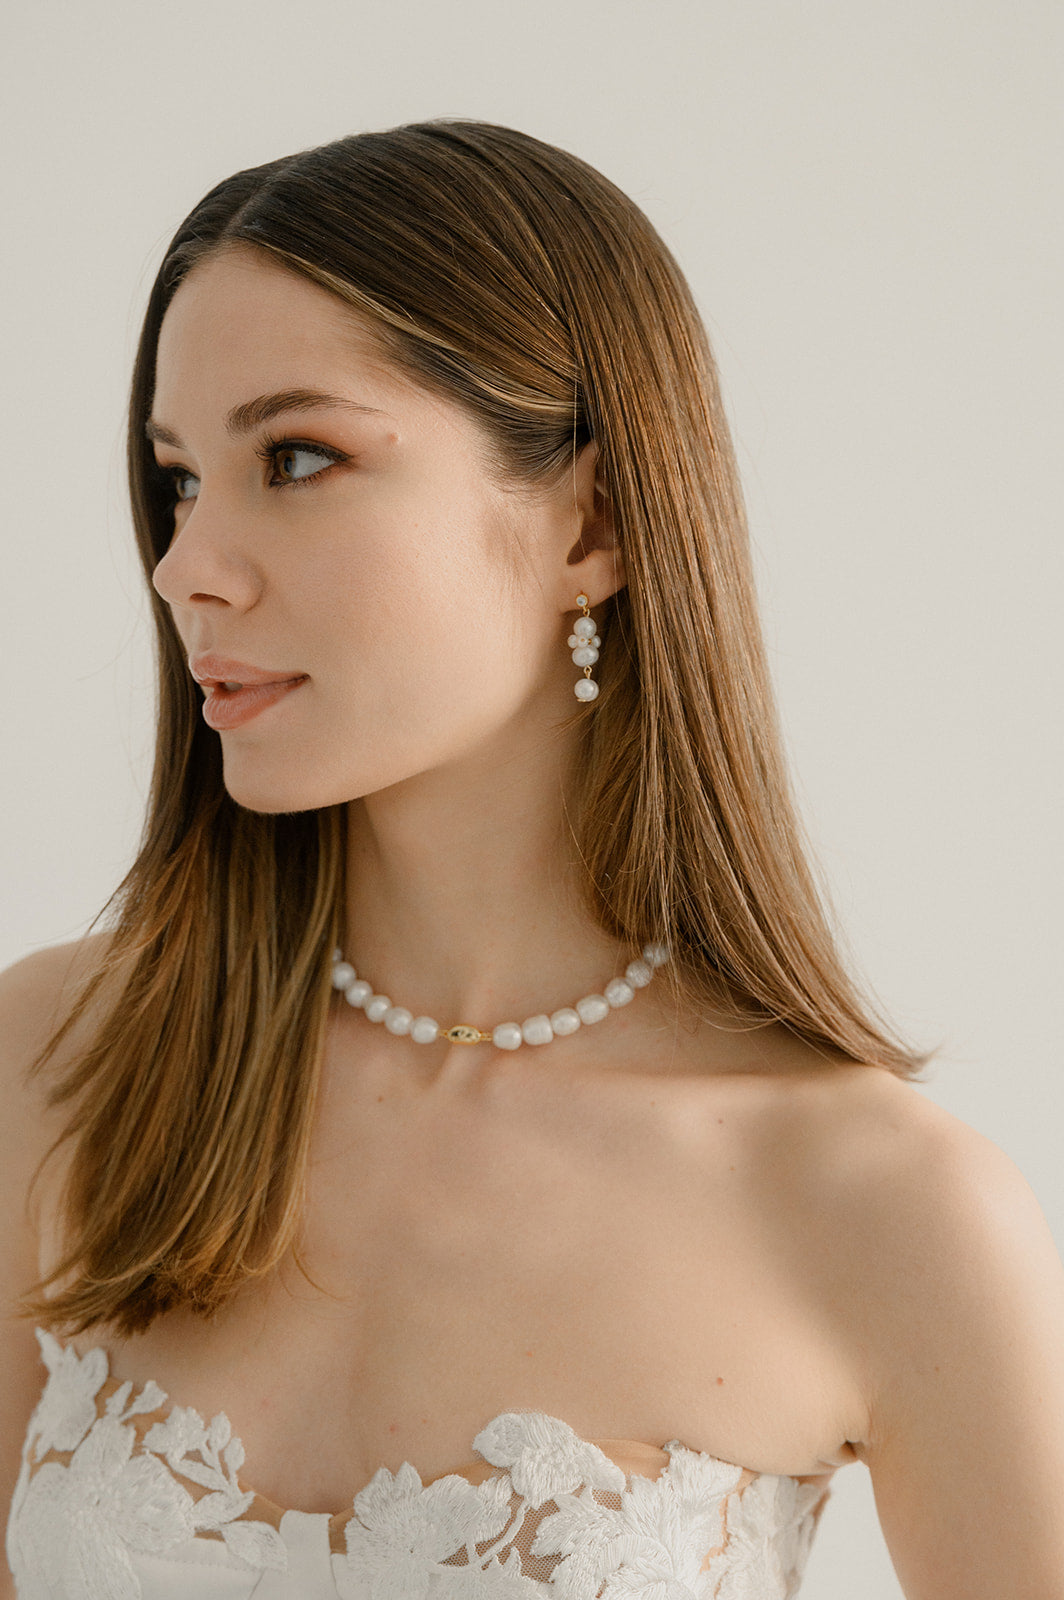 Femme qui regarde sur le côté avec les cheveux lachés montrant ses bijoux de mariage notamment son collier de perles naturelles épaisses et ces boucles d'oreilles abstraites